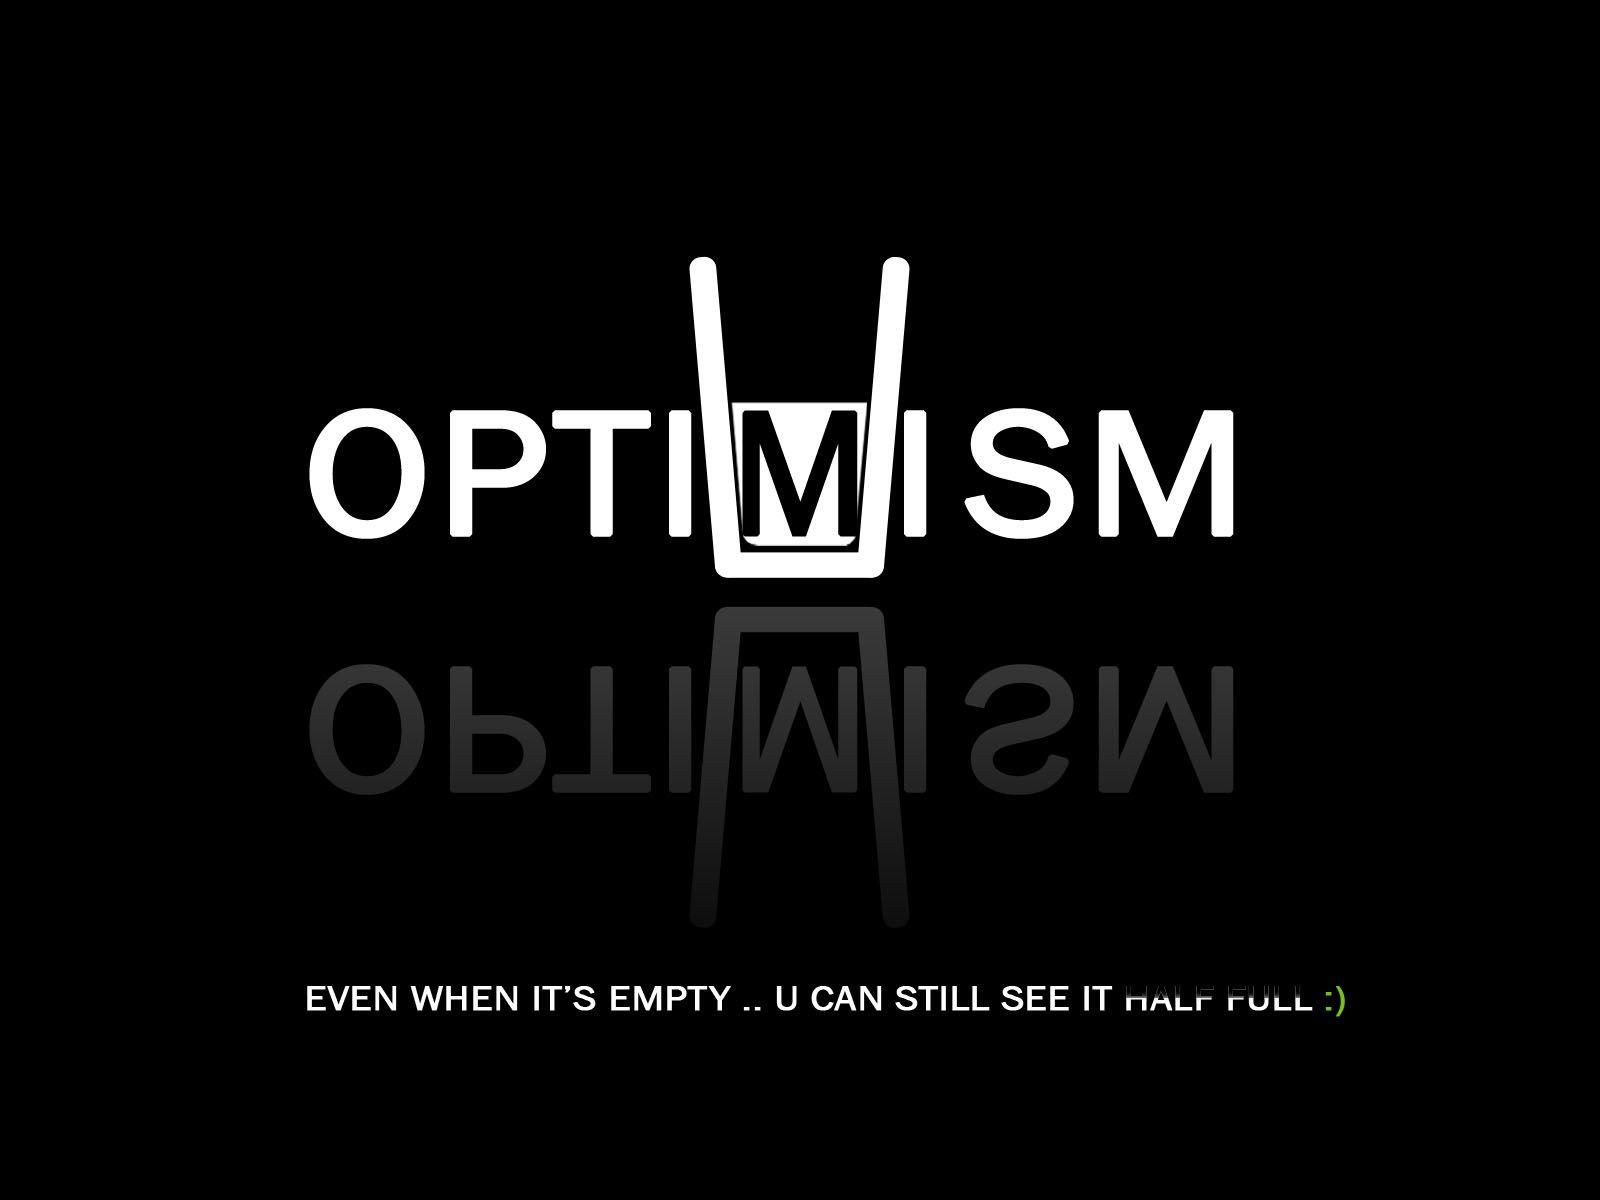      optimism   